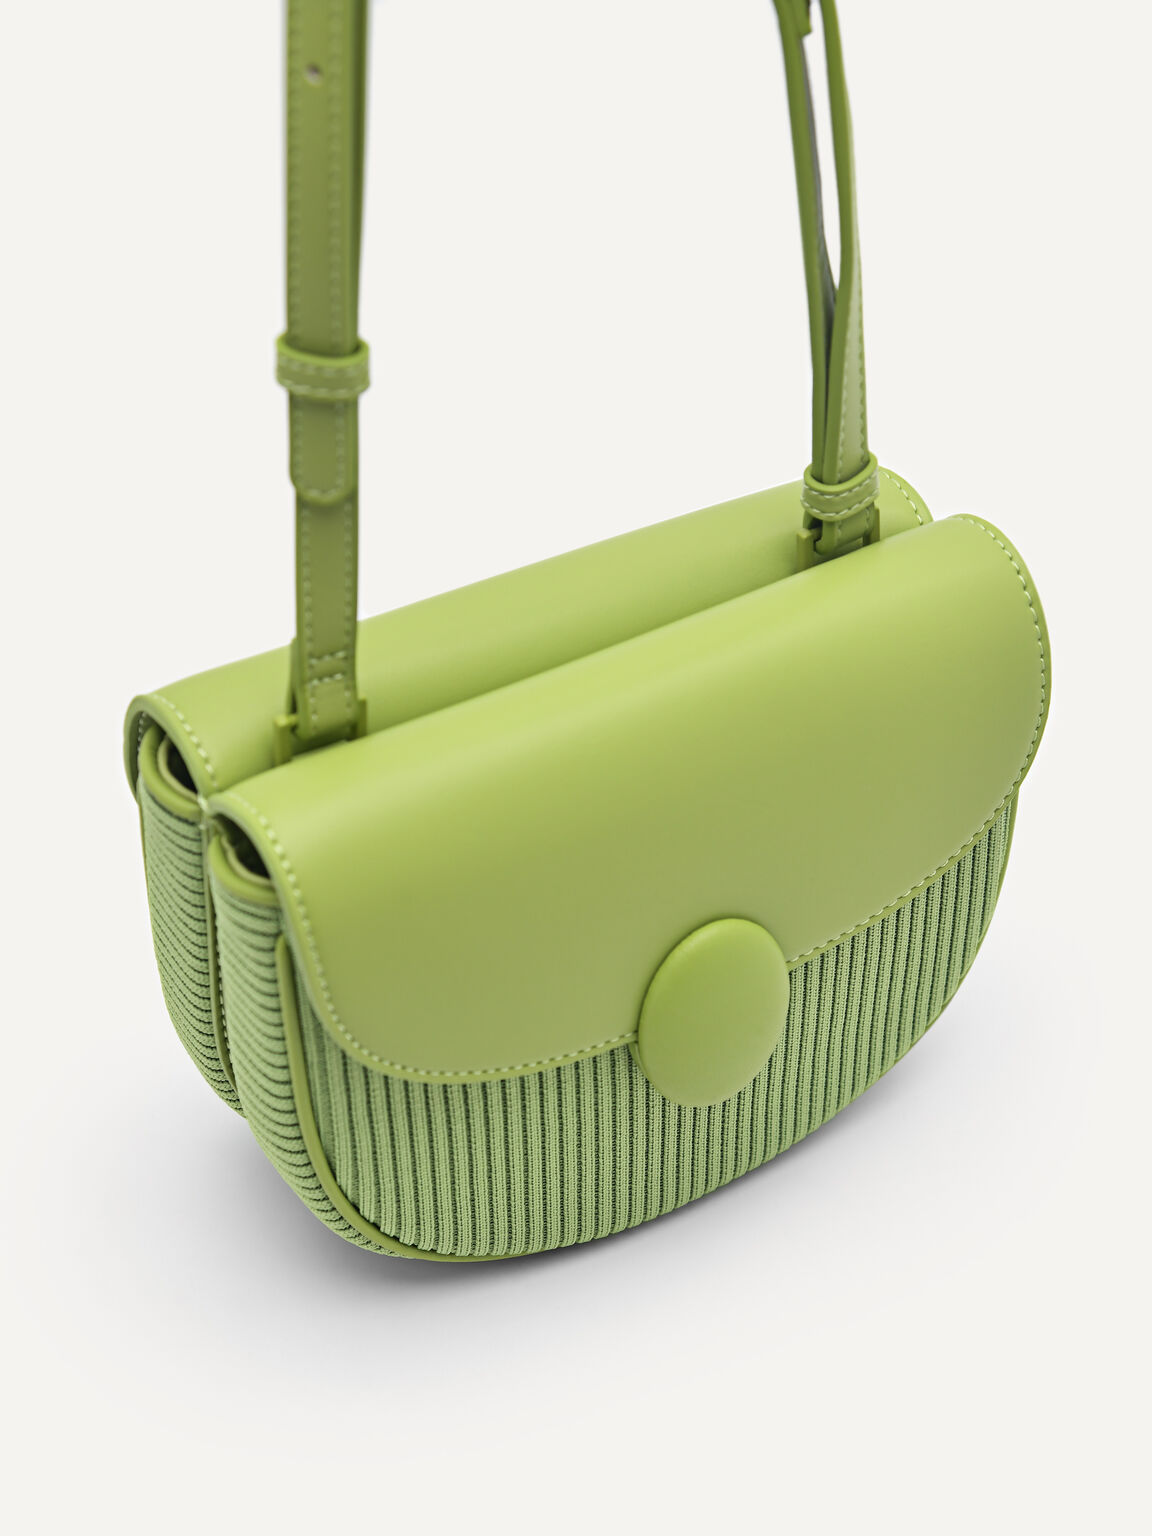 Polly Shoulder Bag, Green